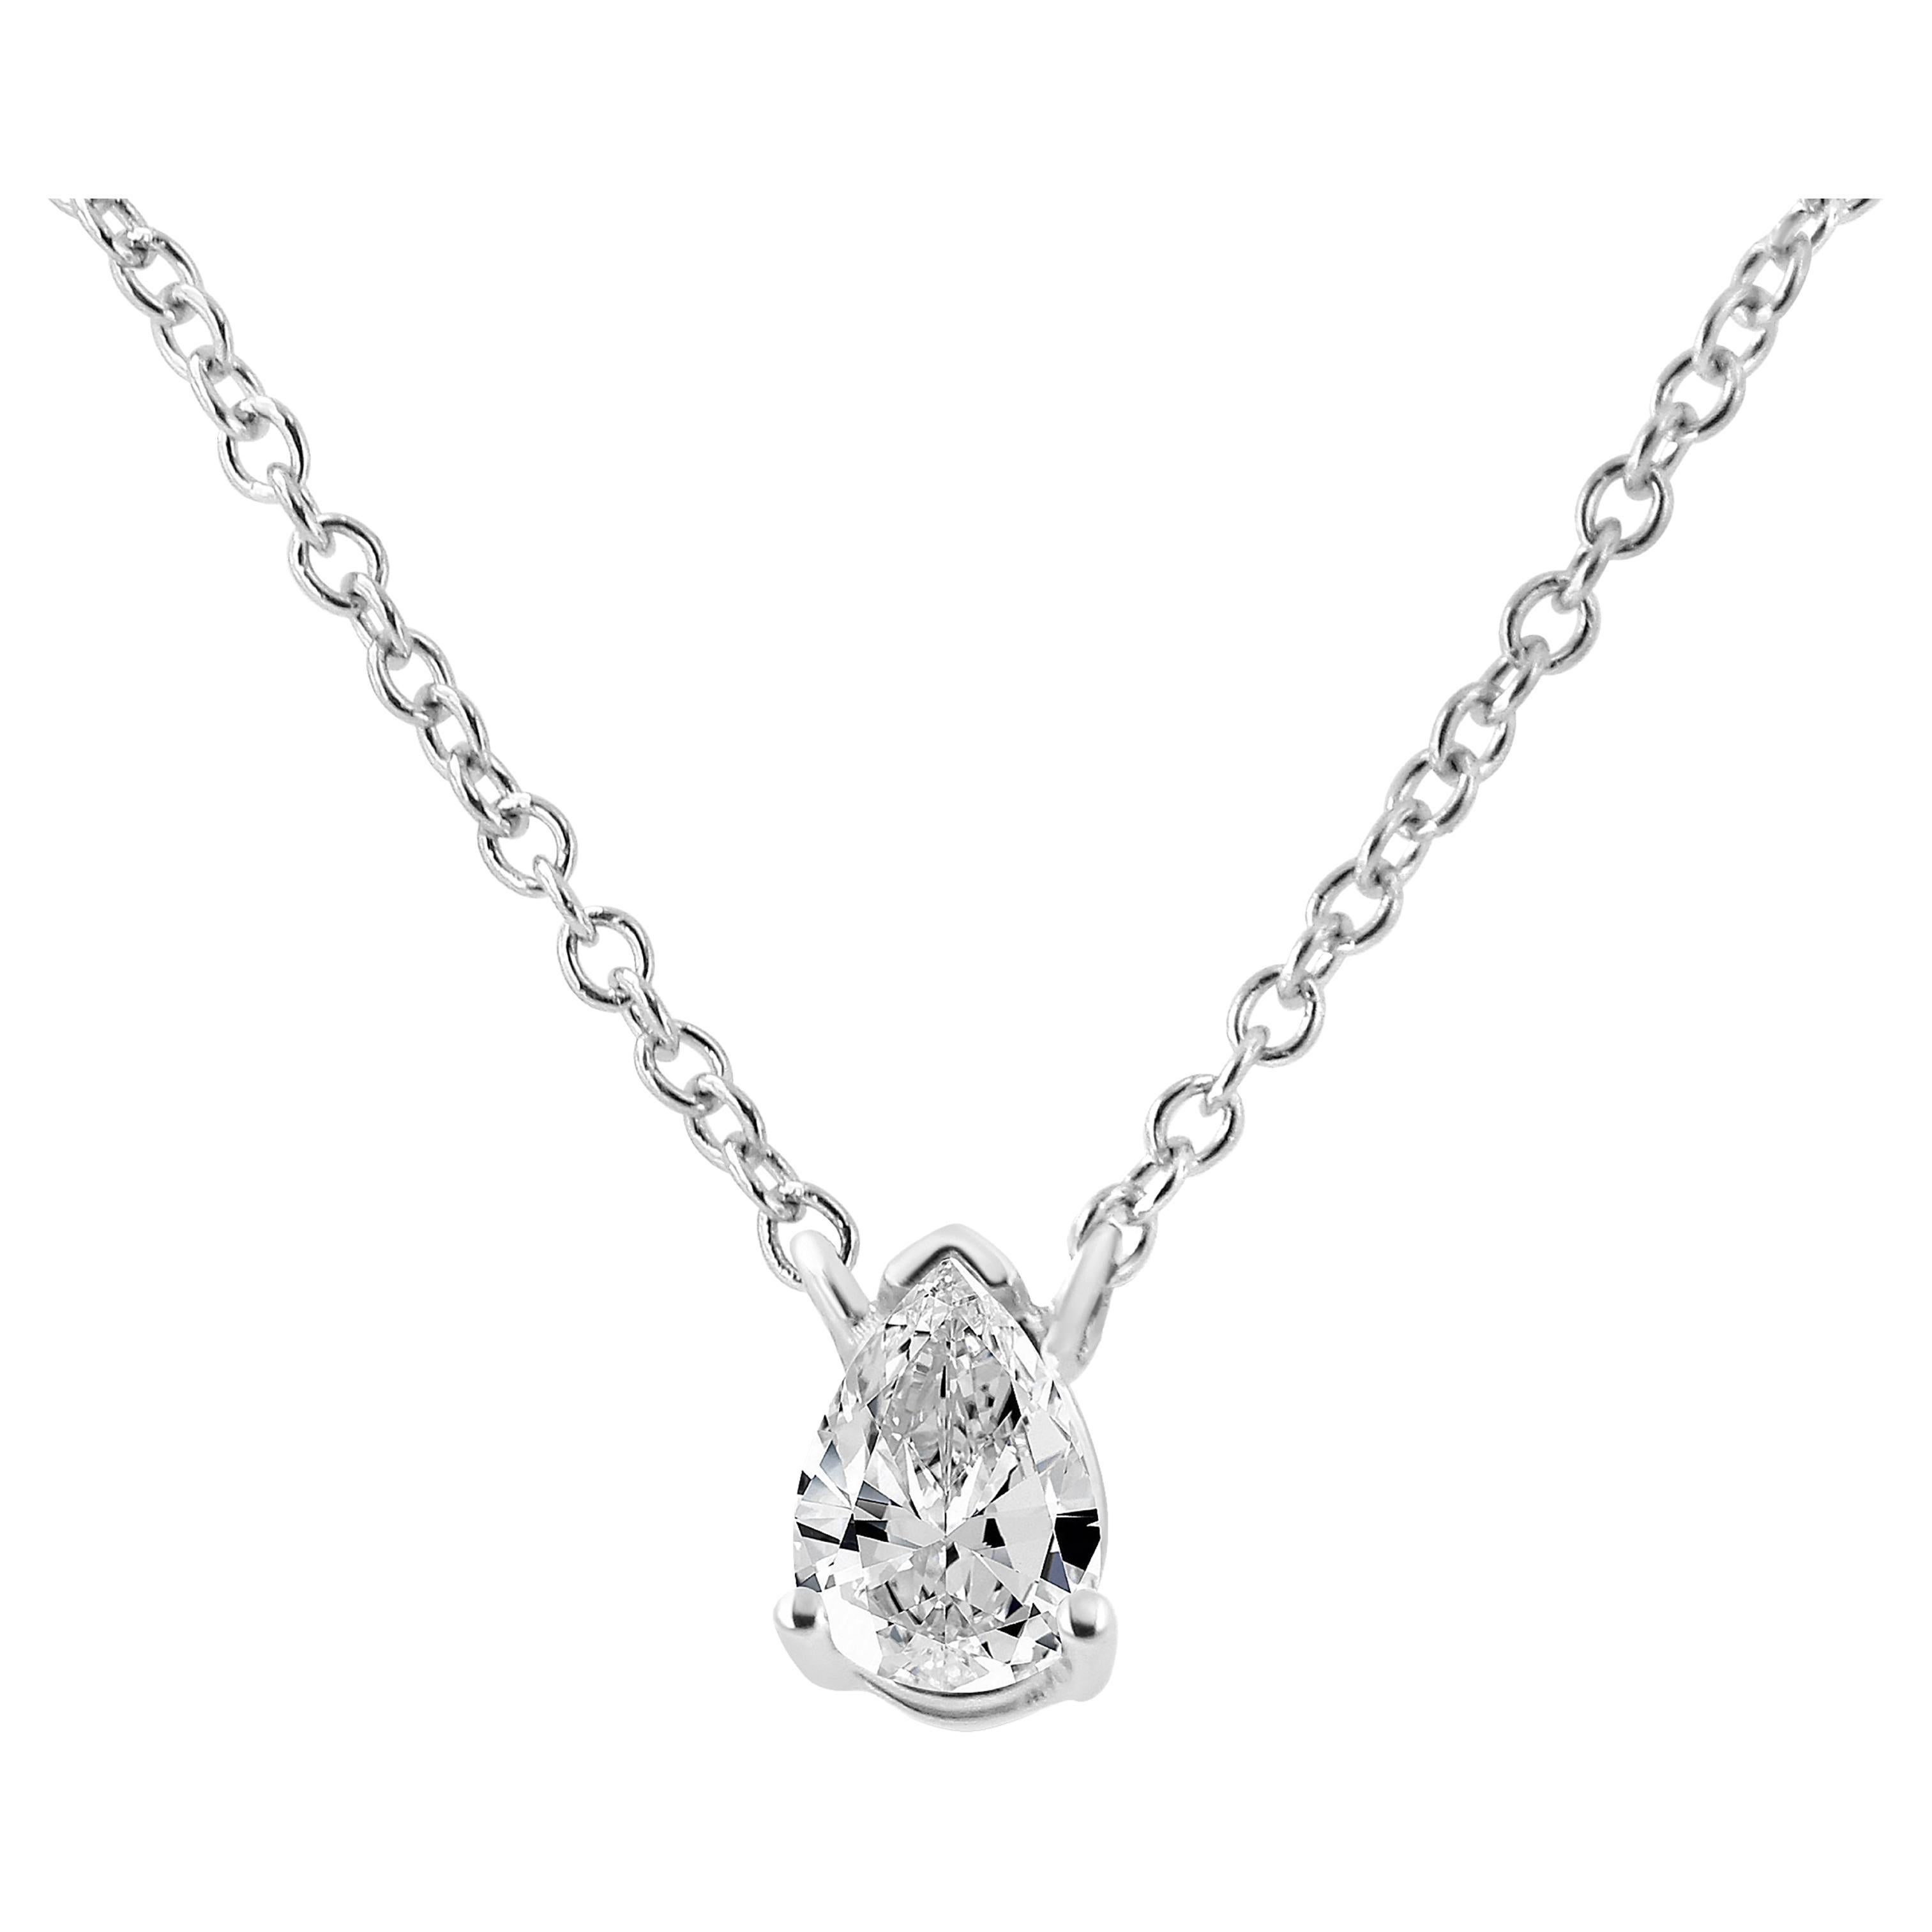 14K White Gold 1/5 Carat Pear Shape Solitaire Diamond 18" Pendant Necklace